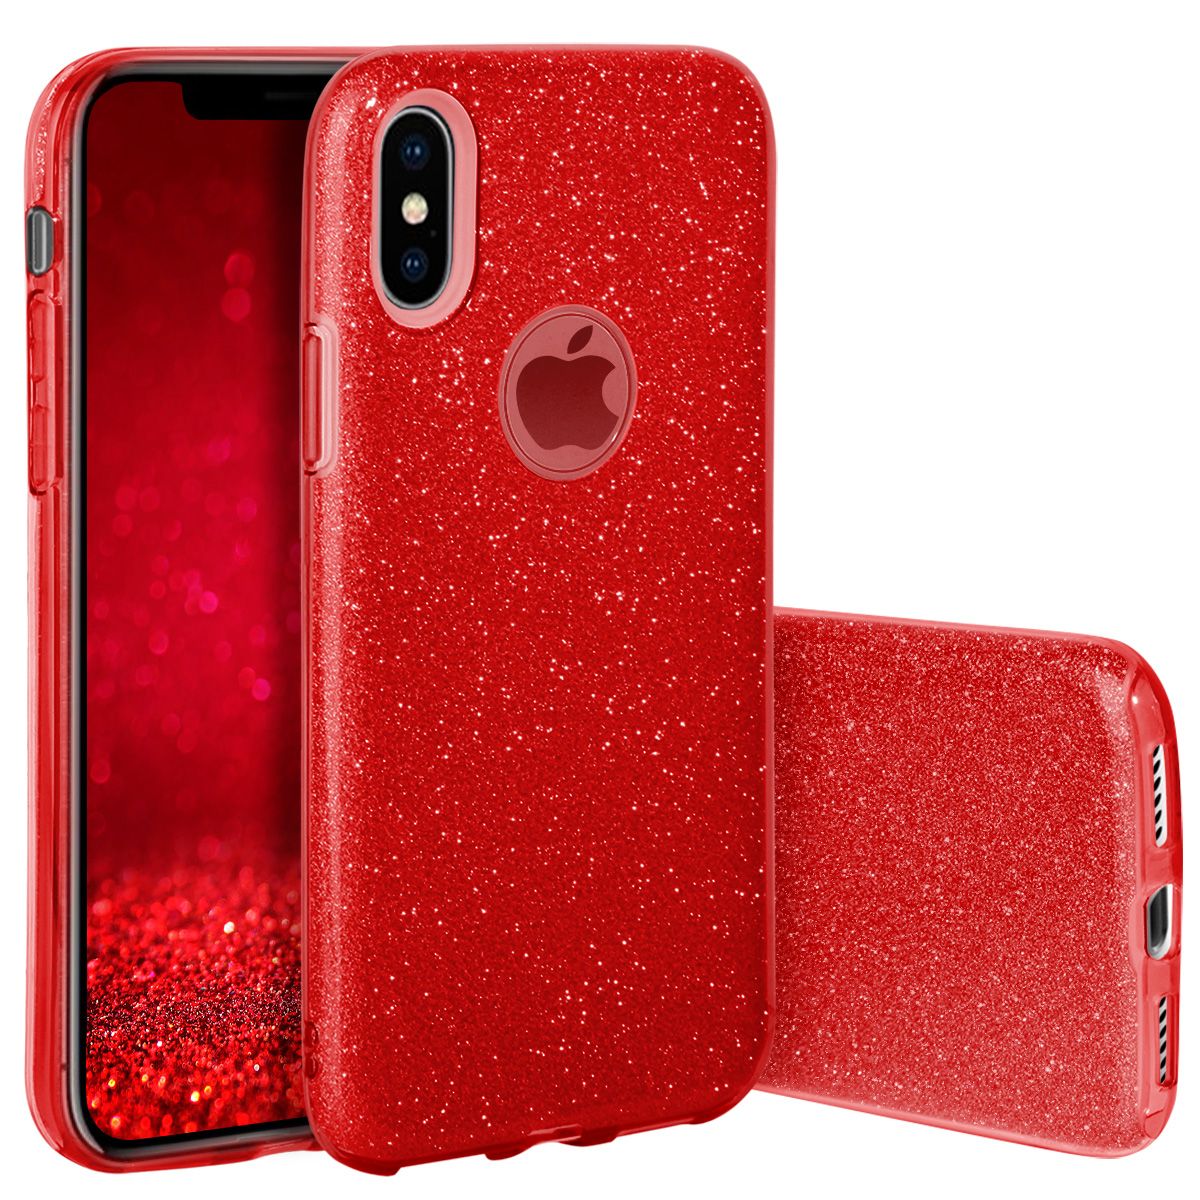 Pouzdro Blink Case pro Huawei Mate 10 Lite - červené